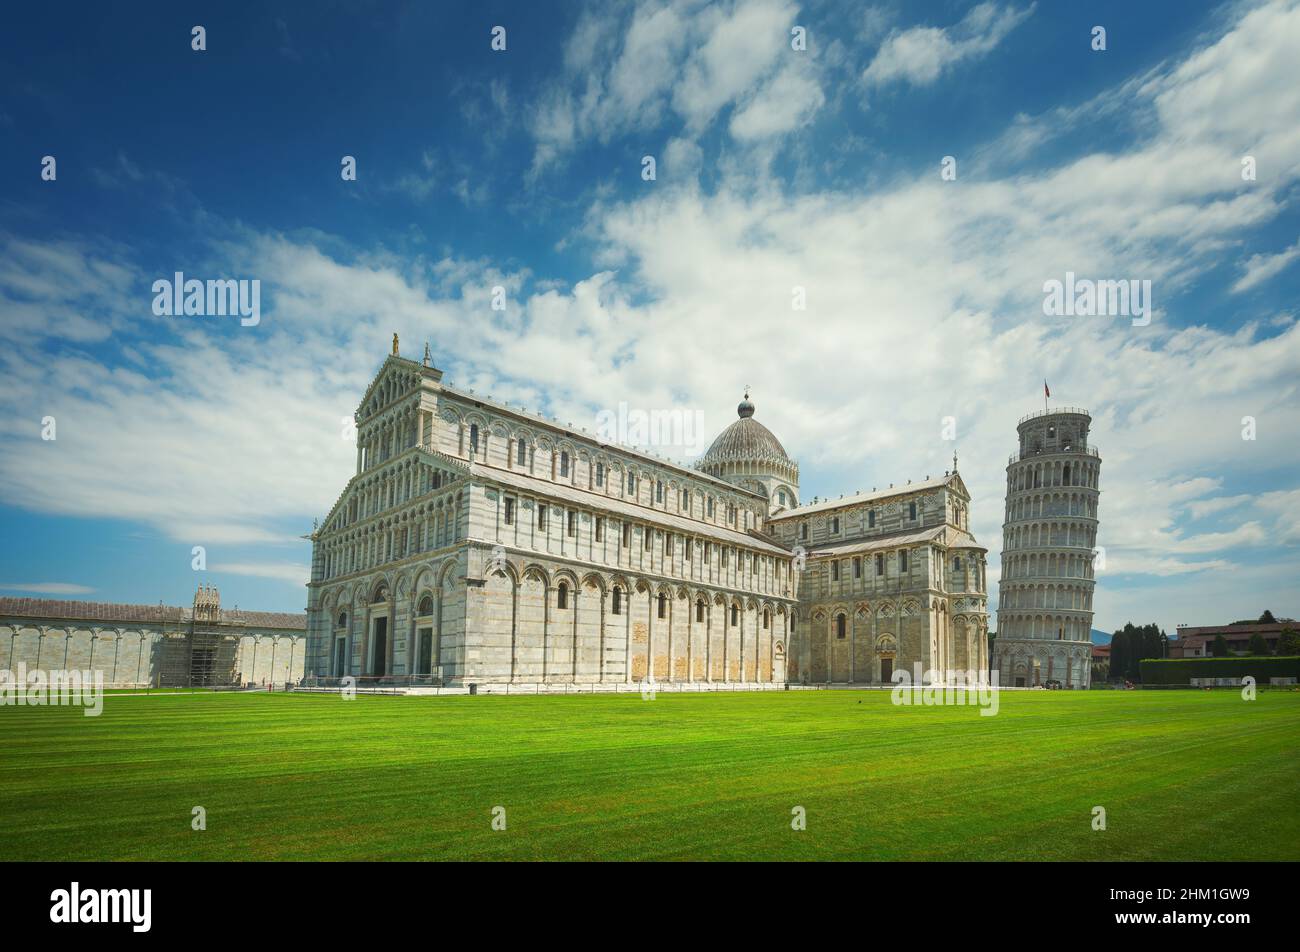 Pisa, Wunder Square anzeigen. Kathedrale Duomo und der schiefe Turm von Pisa. UNESCO-Weltkulturerbe. Toskana, Italien, Europa. Stockfoto